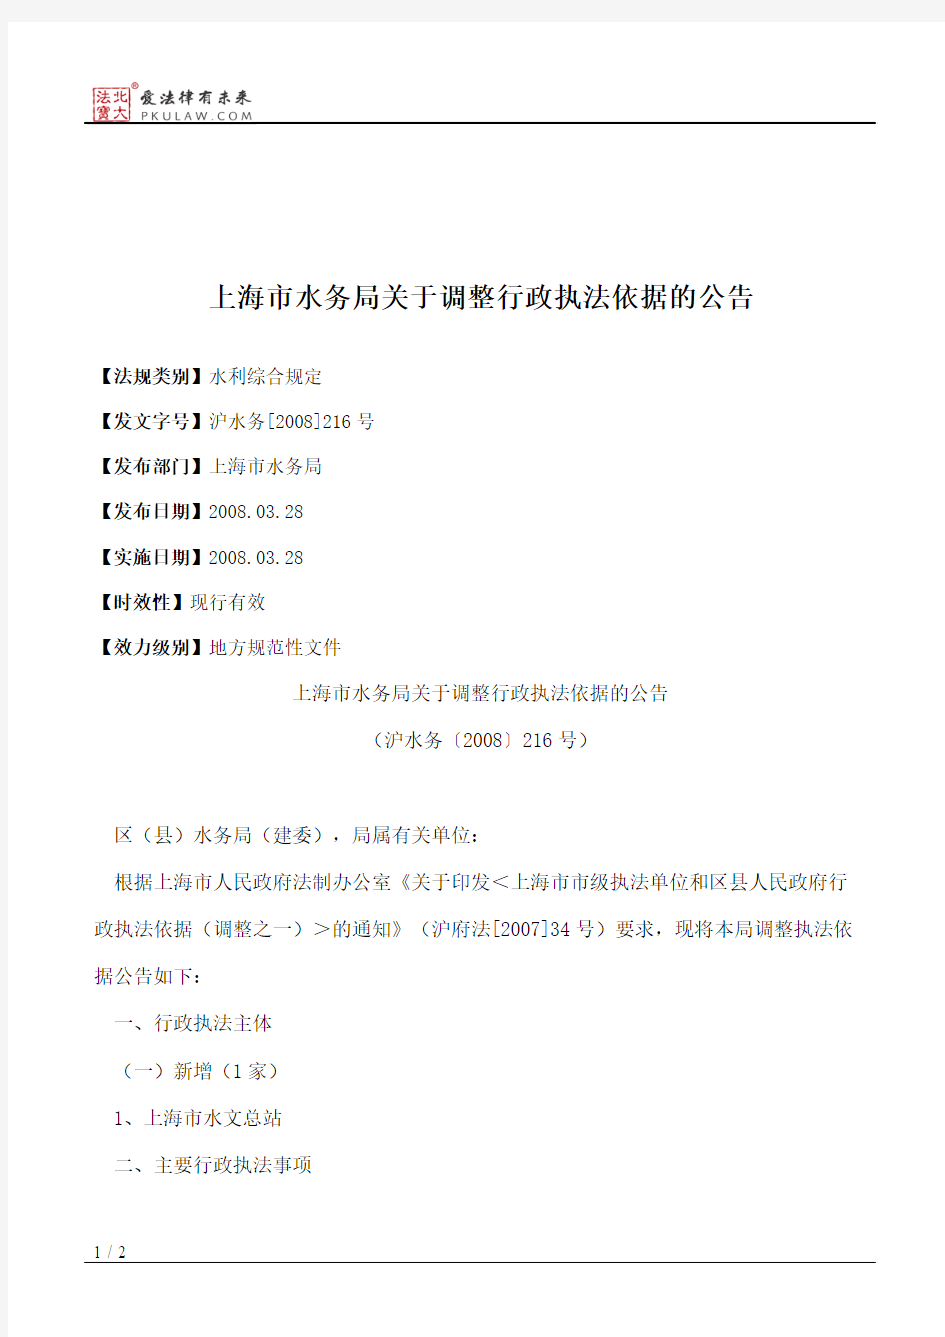 上海市水务局关于调整行政执法依据的公告